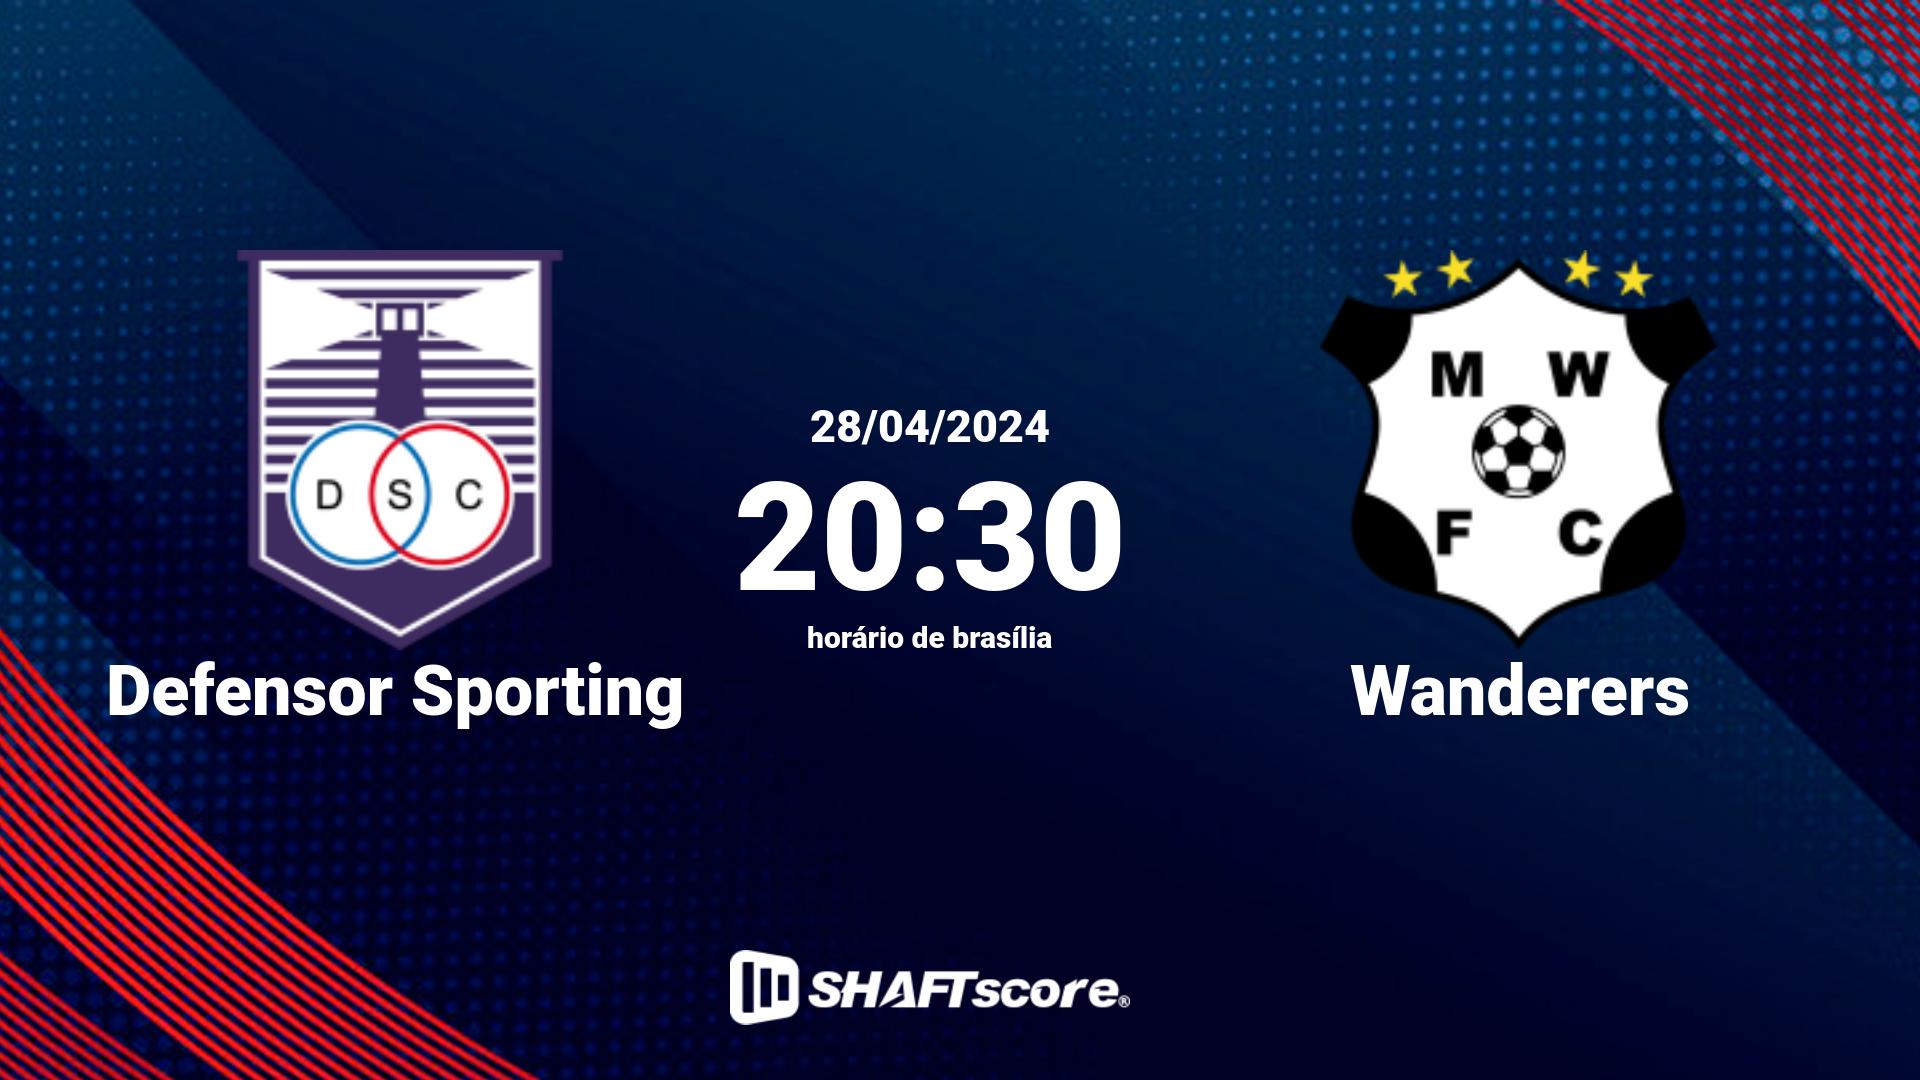 Estatísticas do jogo Defensor Sporting vs Wanderers 28.04 20:30